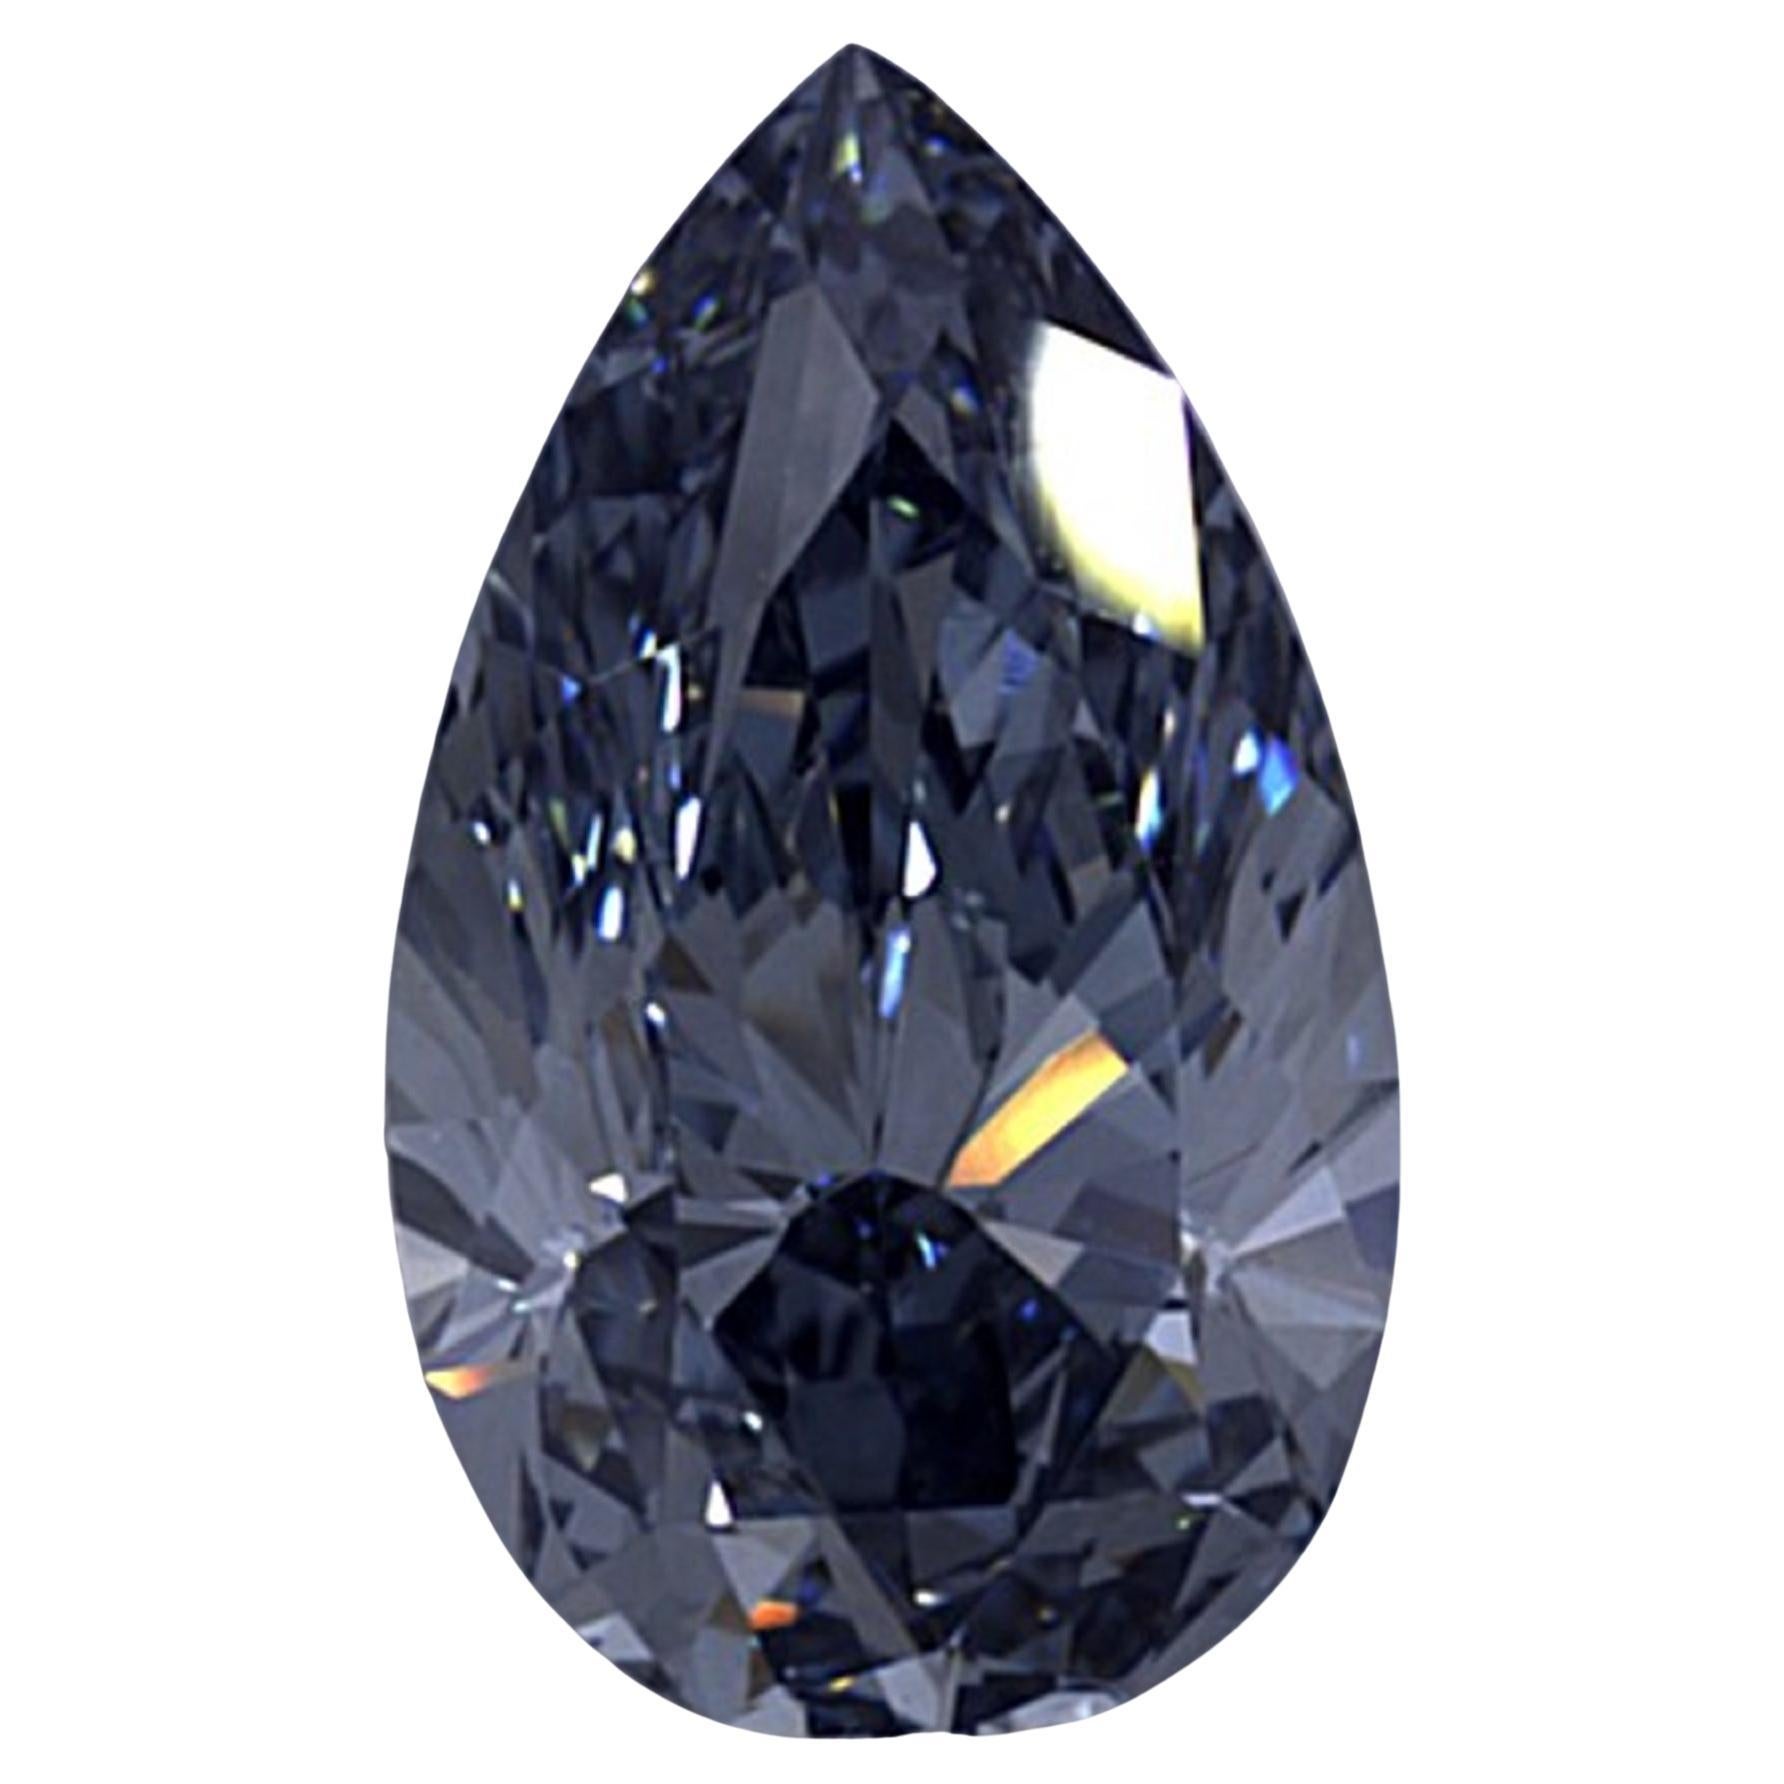 Admirez l'éclat extraordinaire de notre diamant exceptionnel certifié GIA de 1 carat de couleur bleu intense, une véritable merveille parmi les trésors les plus rares de la nature. Certifiée par le GIA pour sa qualité et son authenticité